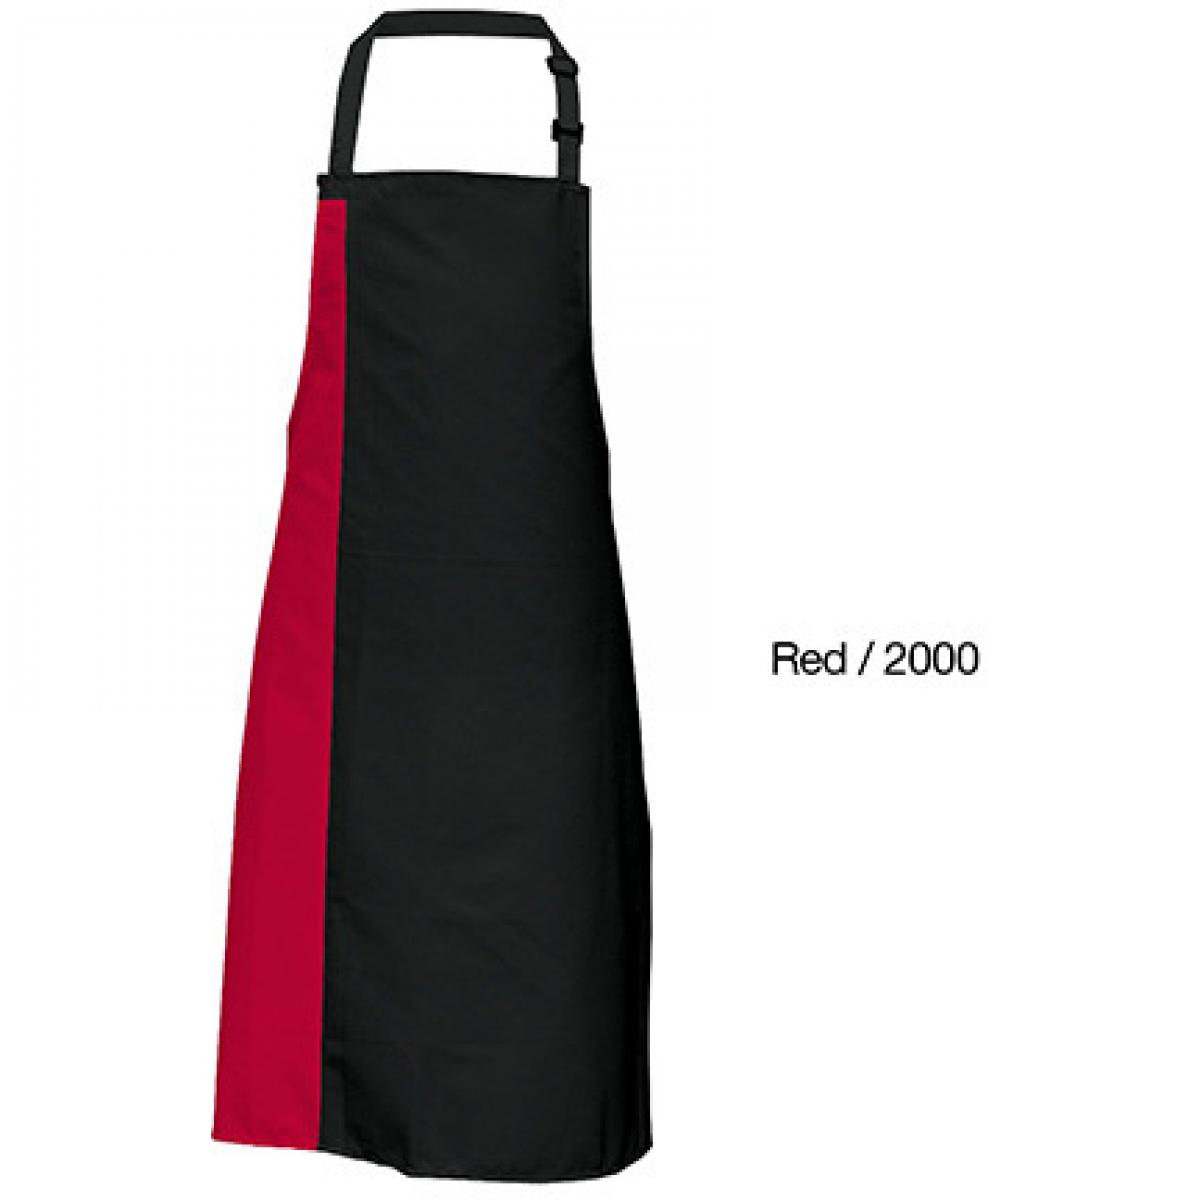 Hersteller: Link Kitchen Wear Herstellernummer: DS8572 Artikelbezeichnung: Duo Apron - 72 x 85 cm - Waschbar bis 60 °C Farbe: Black/Red (ca. Pantone 200)